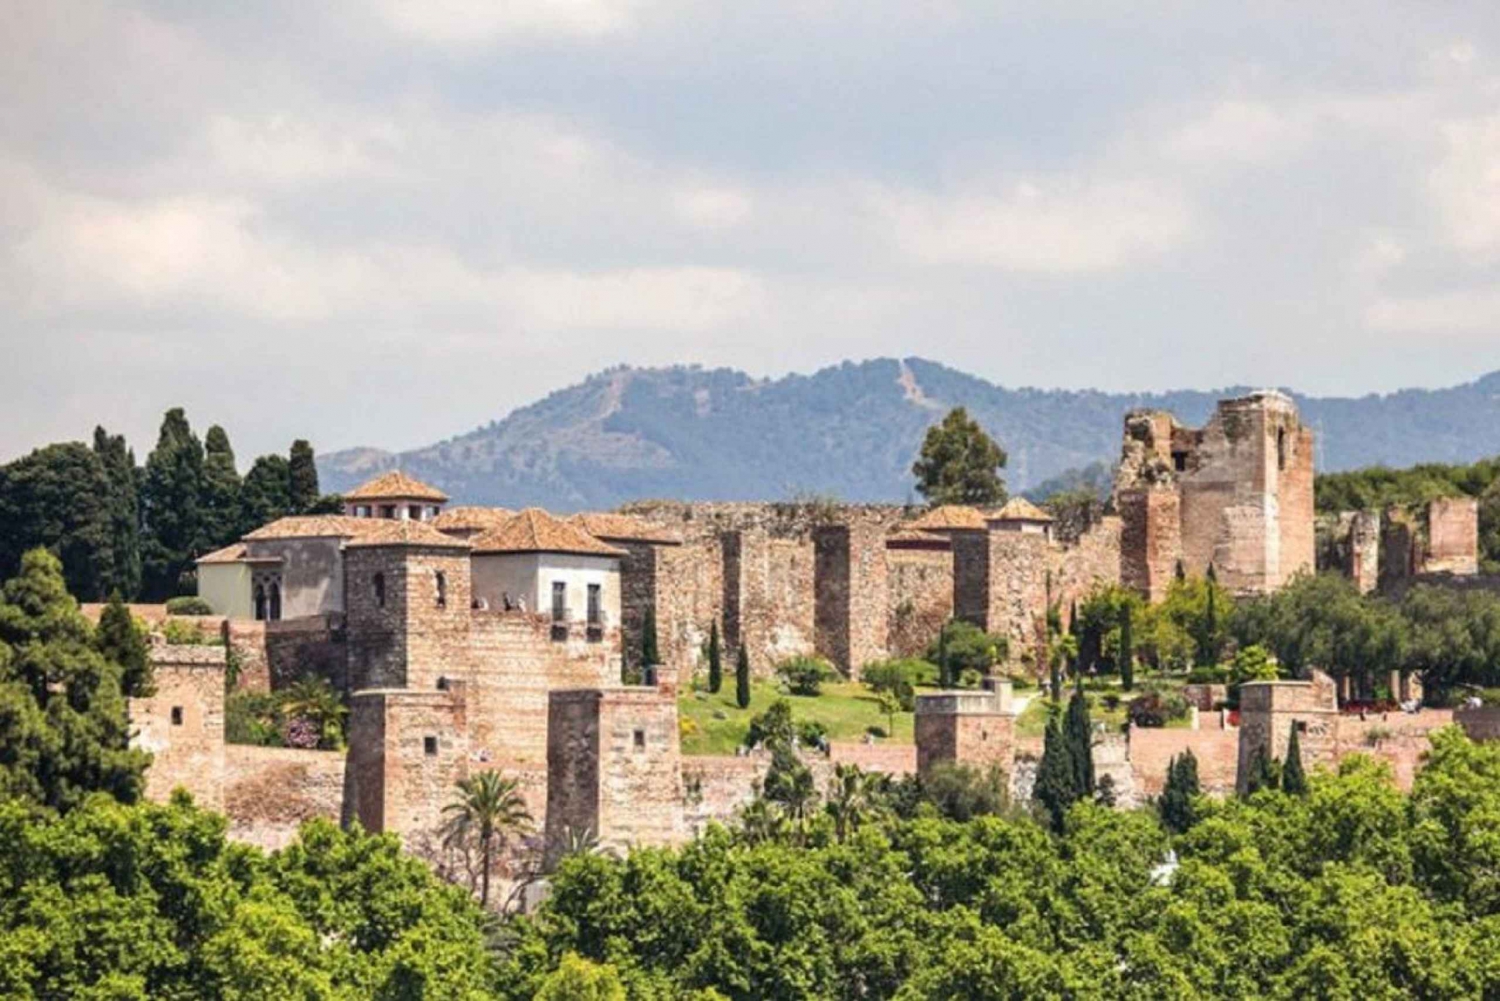 Alcazaba and Nasrid Palace in Malaga